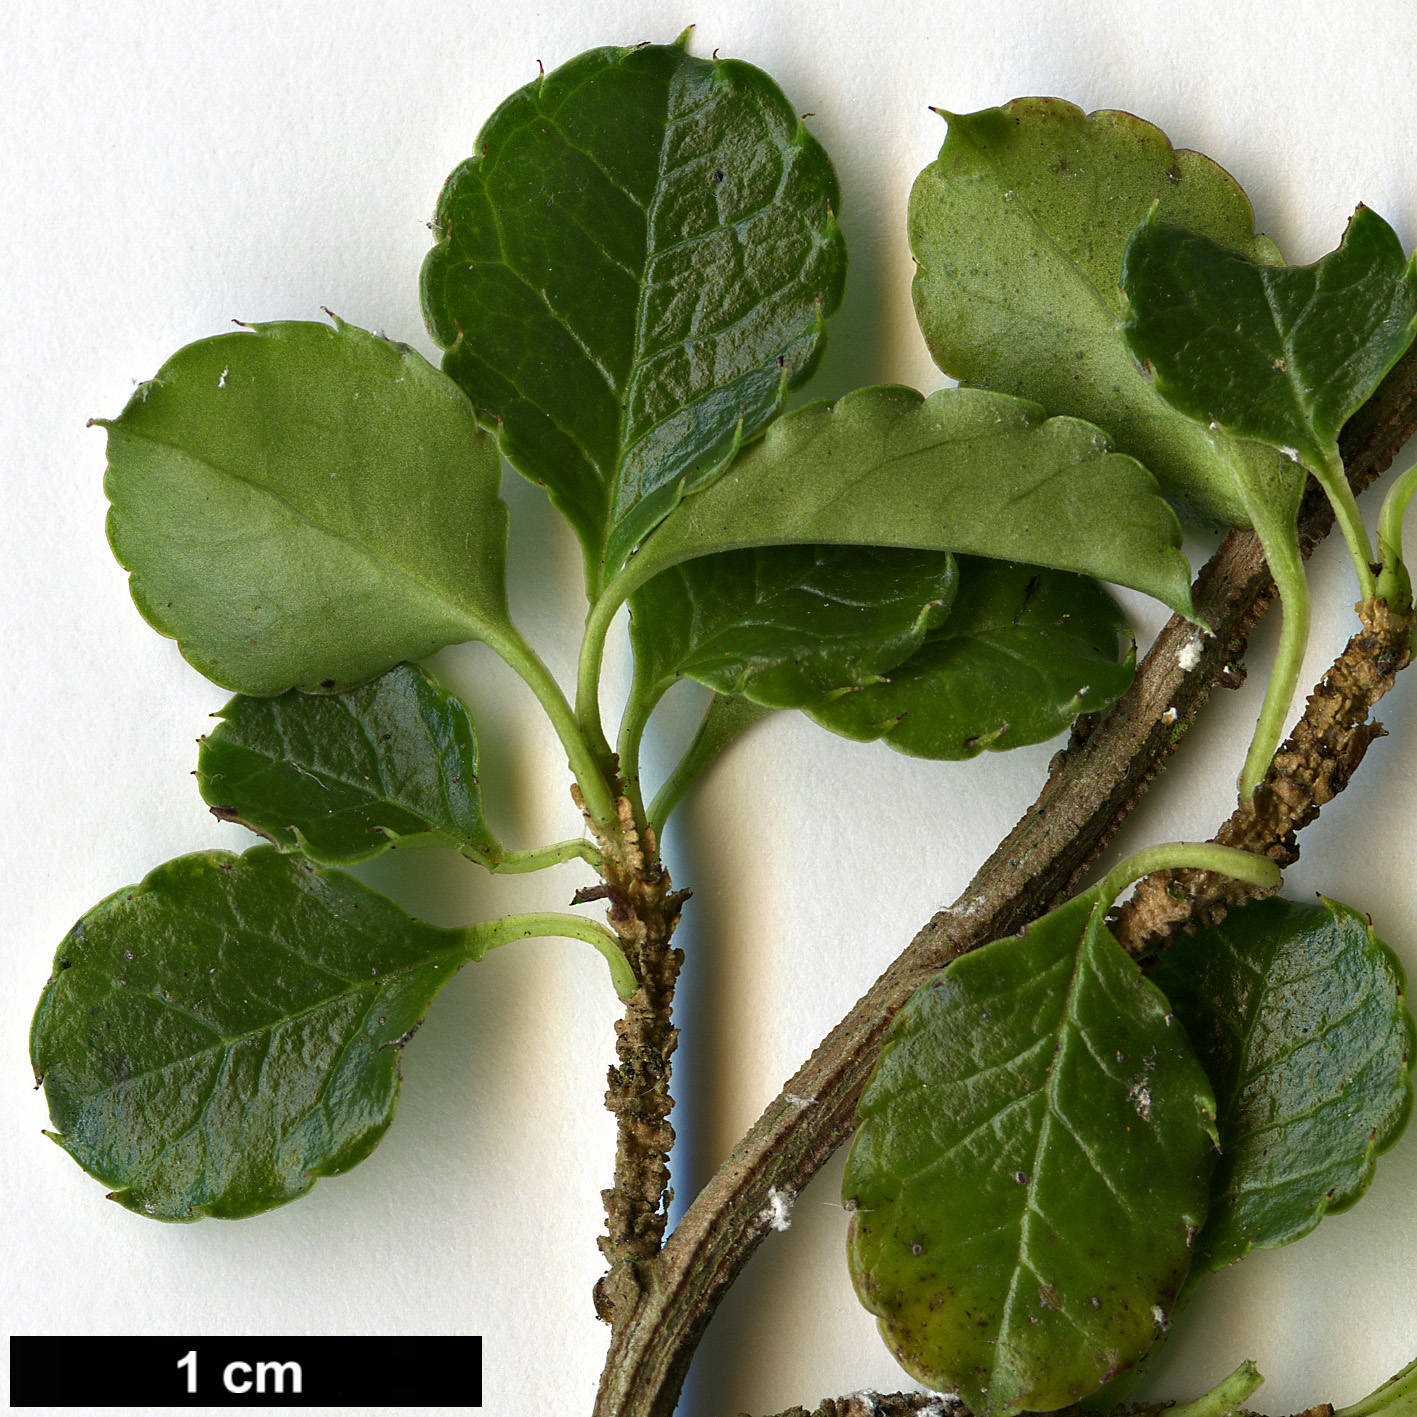 High resolution image: Family: Aquifoliaceae - Genus: Ilex - Taxon: nothofagifolia